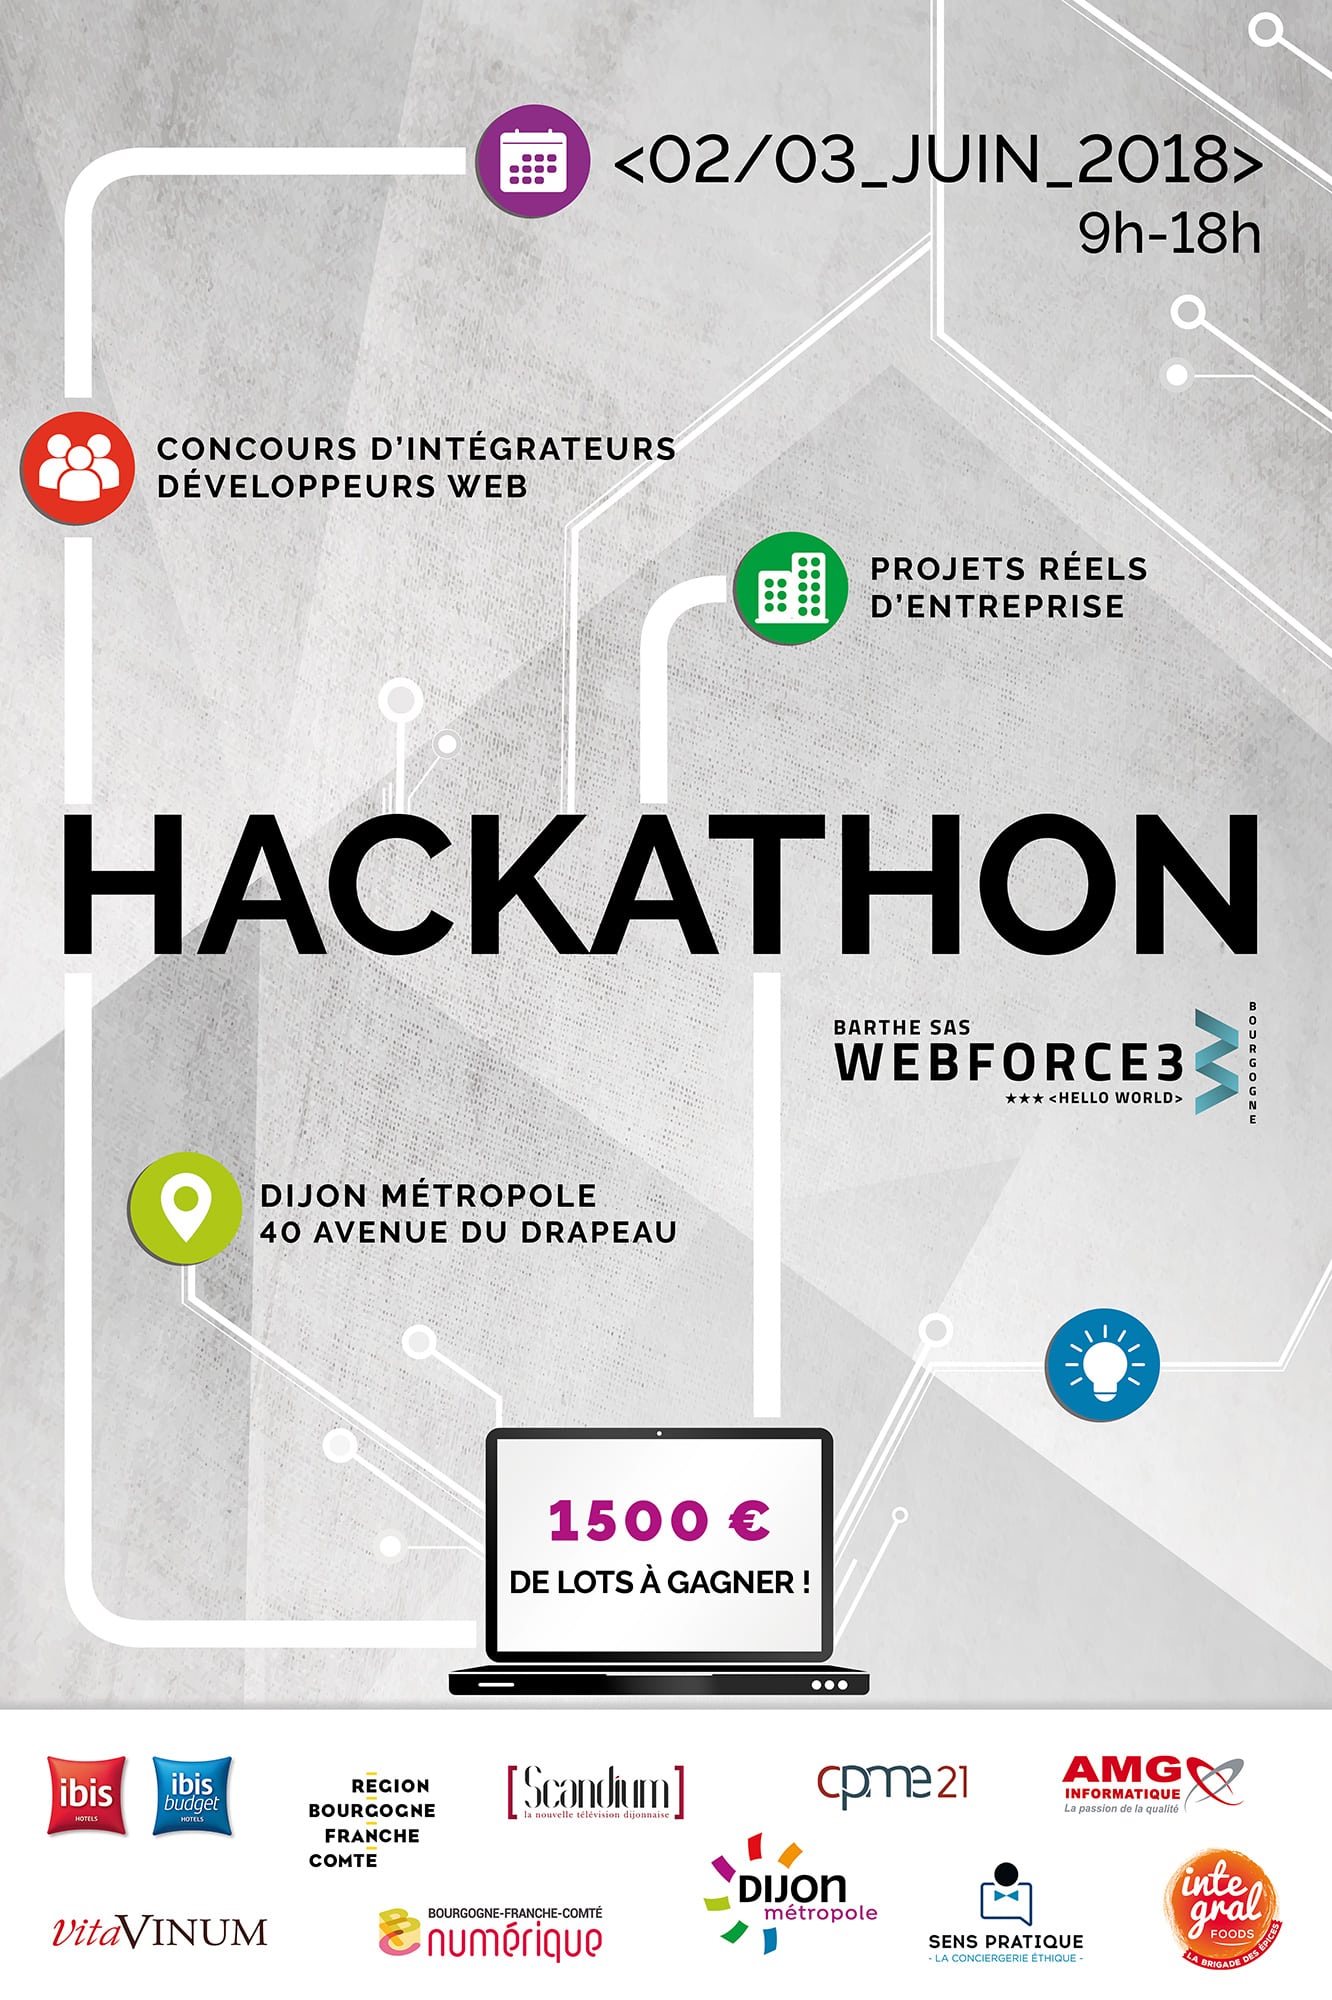 Hackathon dans les locaux de Dijon Métropole 